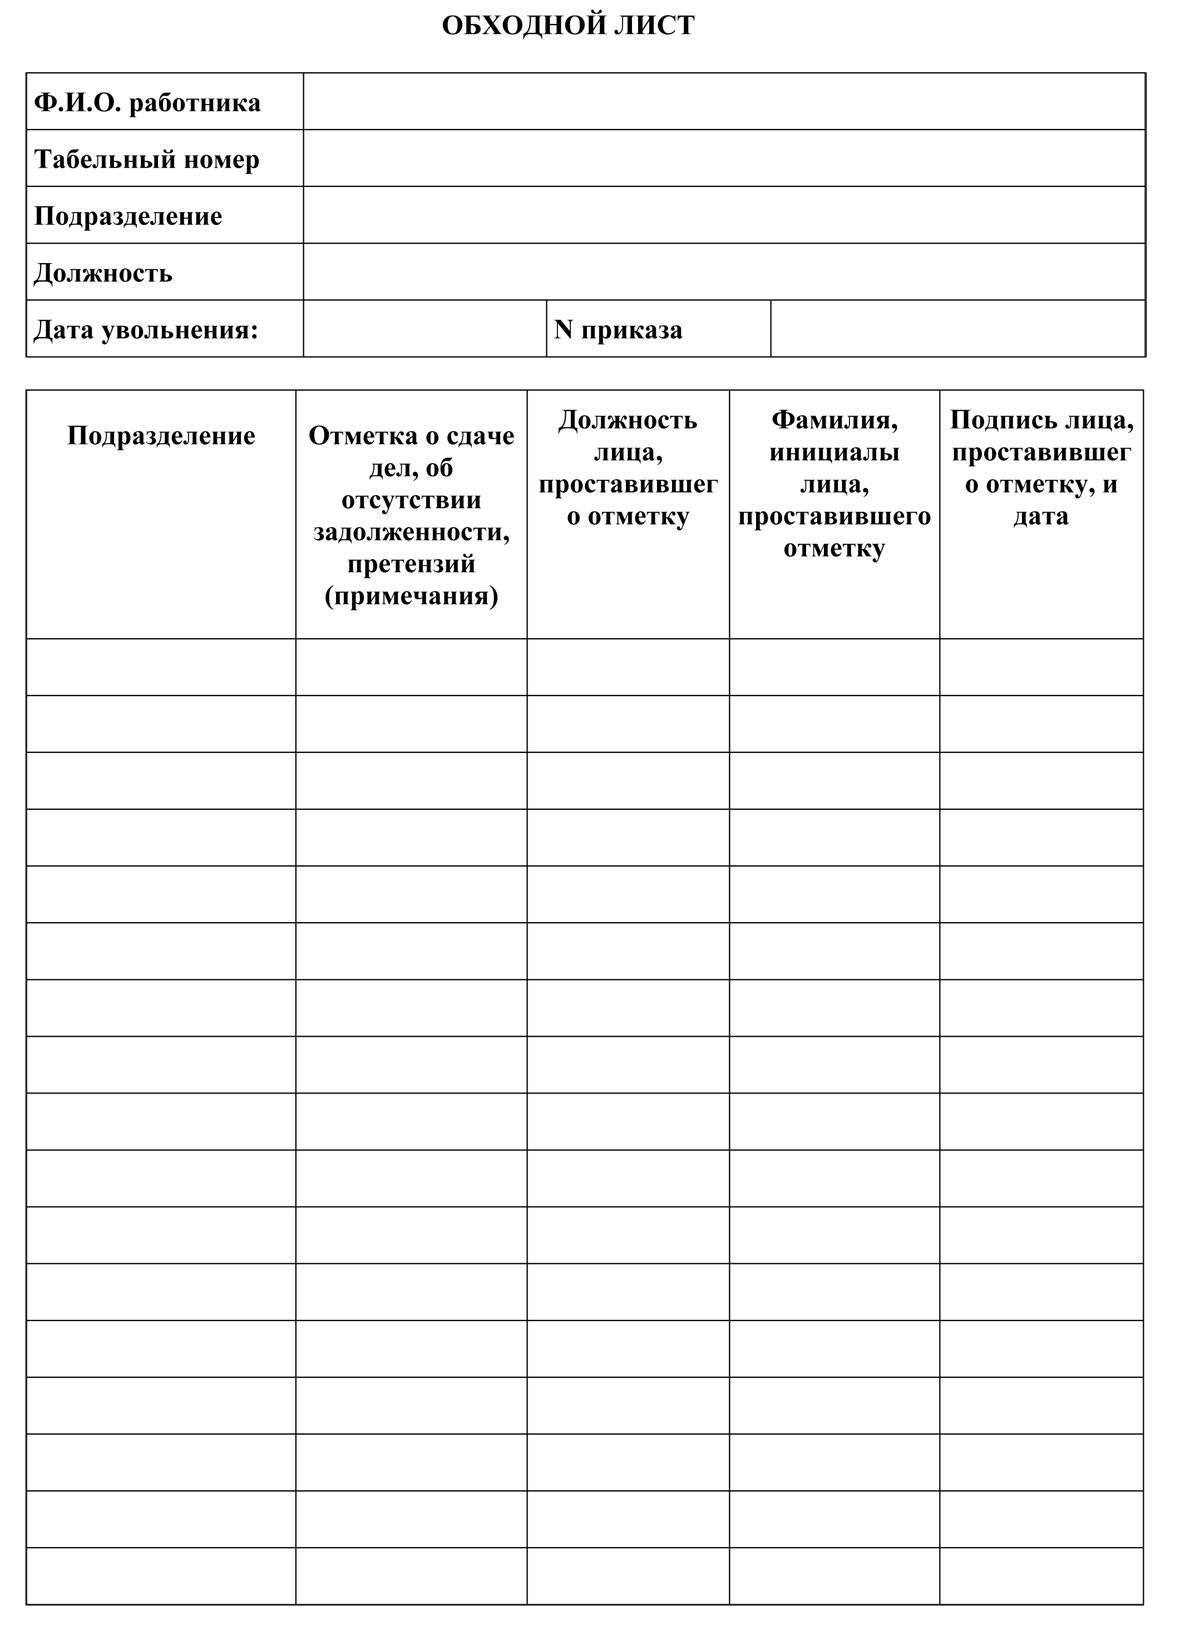 Обходный лист при увольнении: образец оформления :: businessman.ru